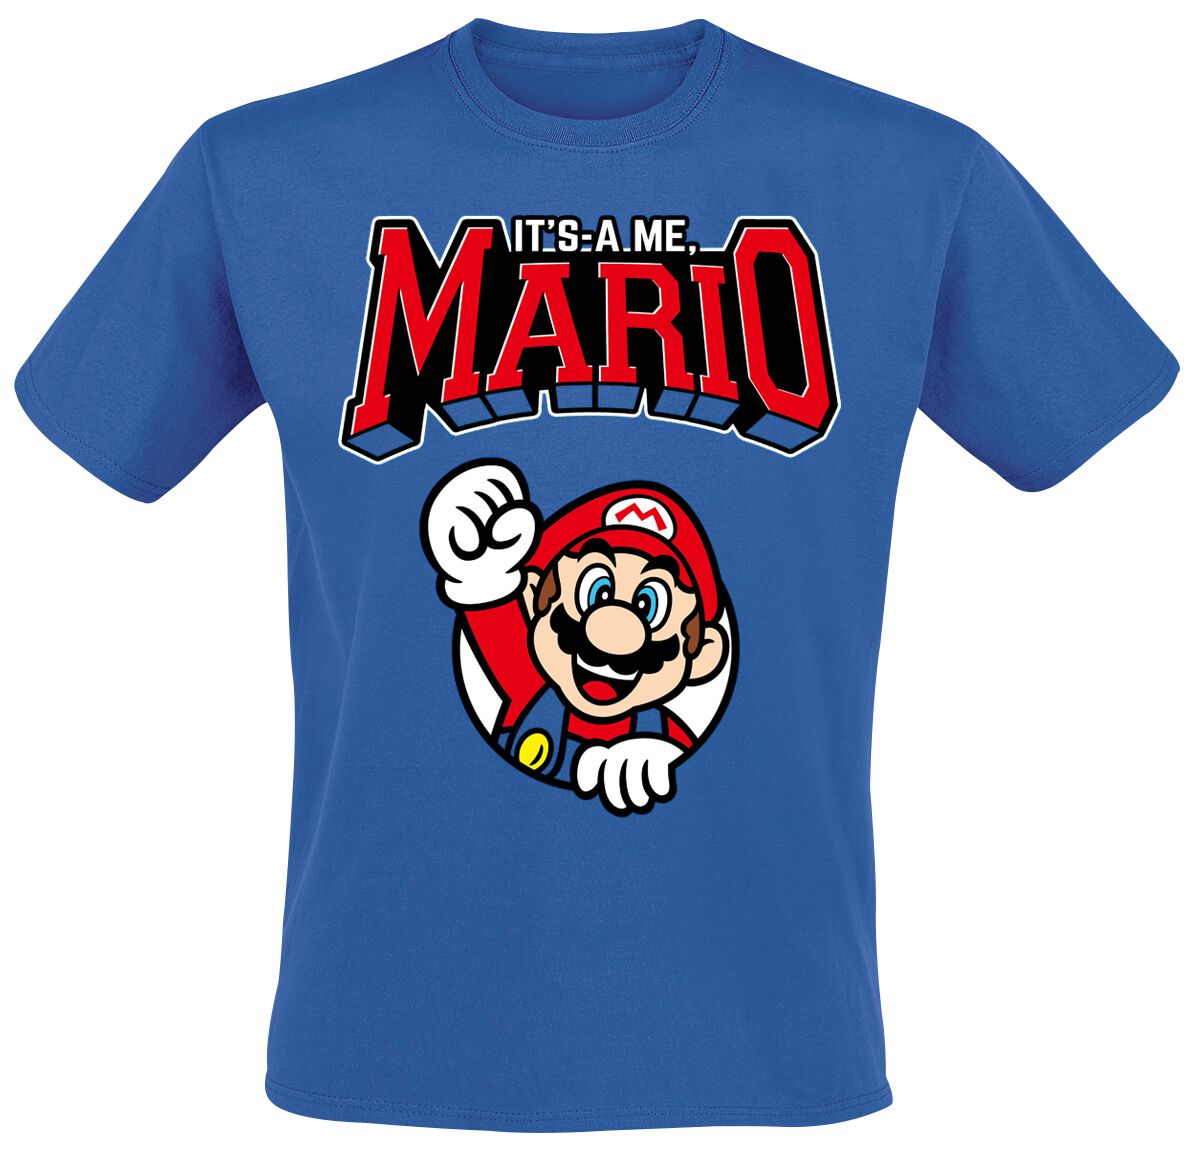 Super Mario Varsity T-Shirt blau in M